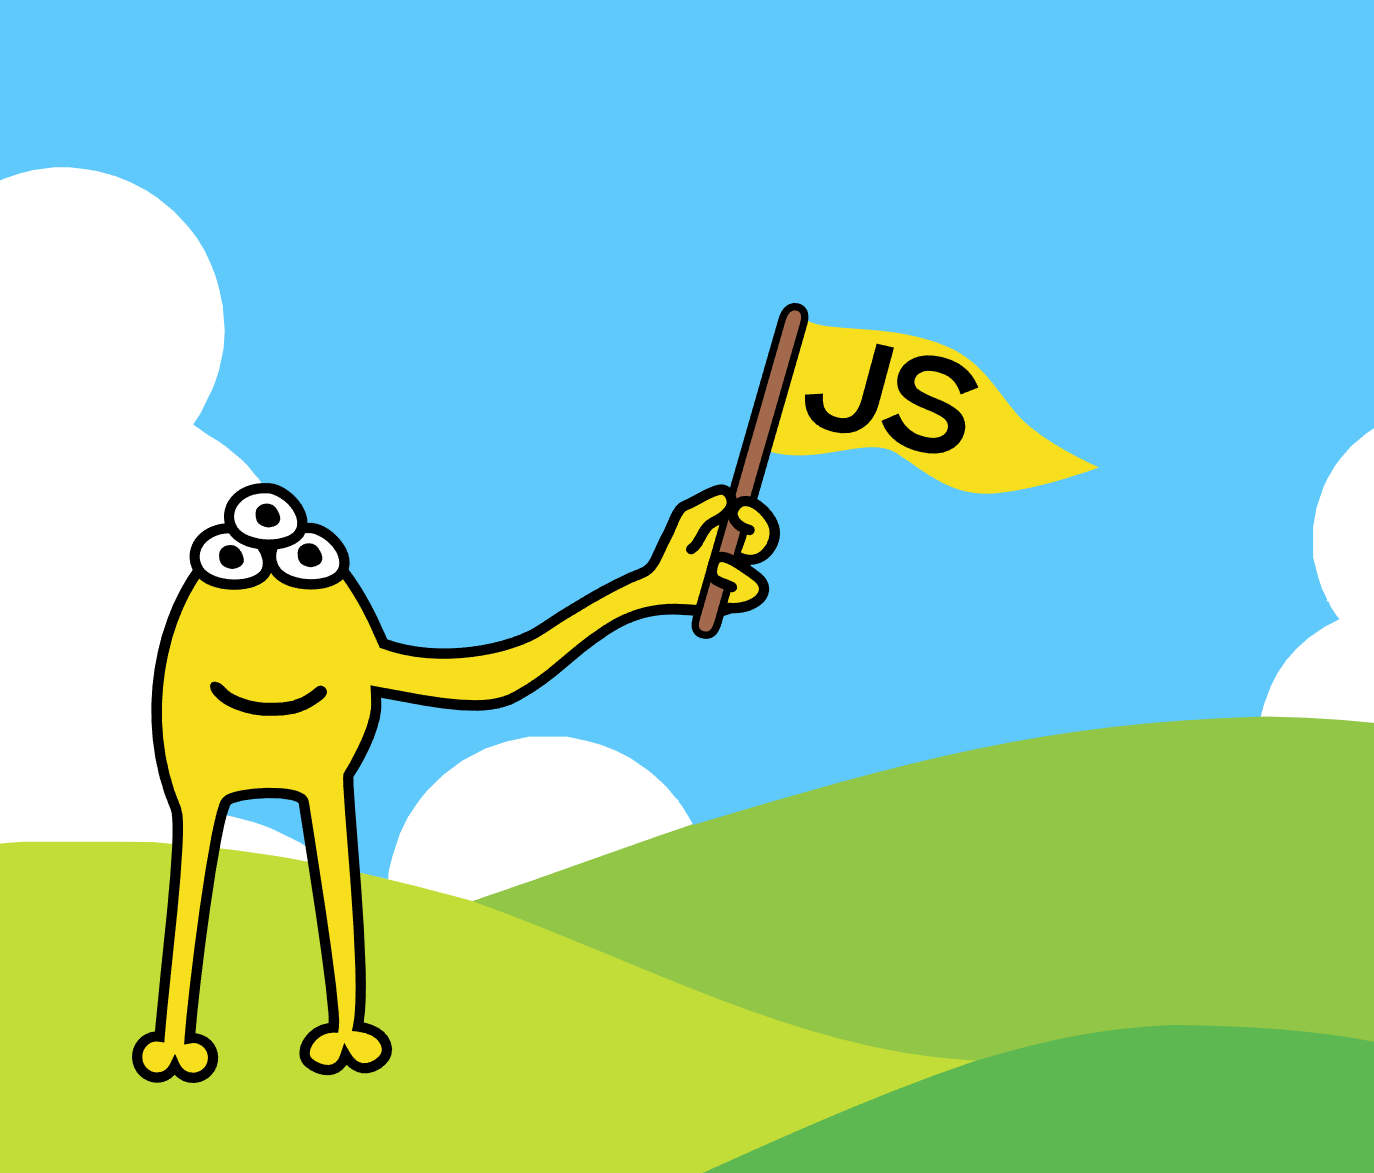 mascote havascript com bandeira nas mãos